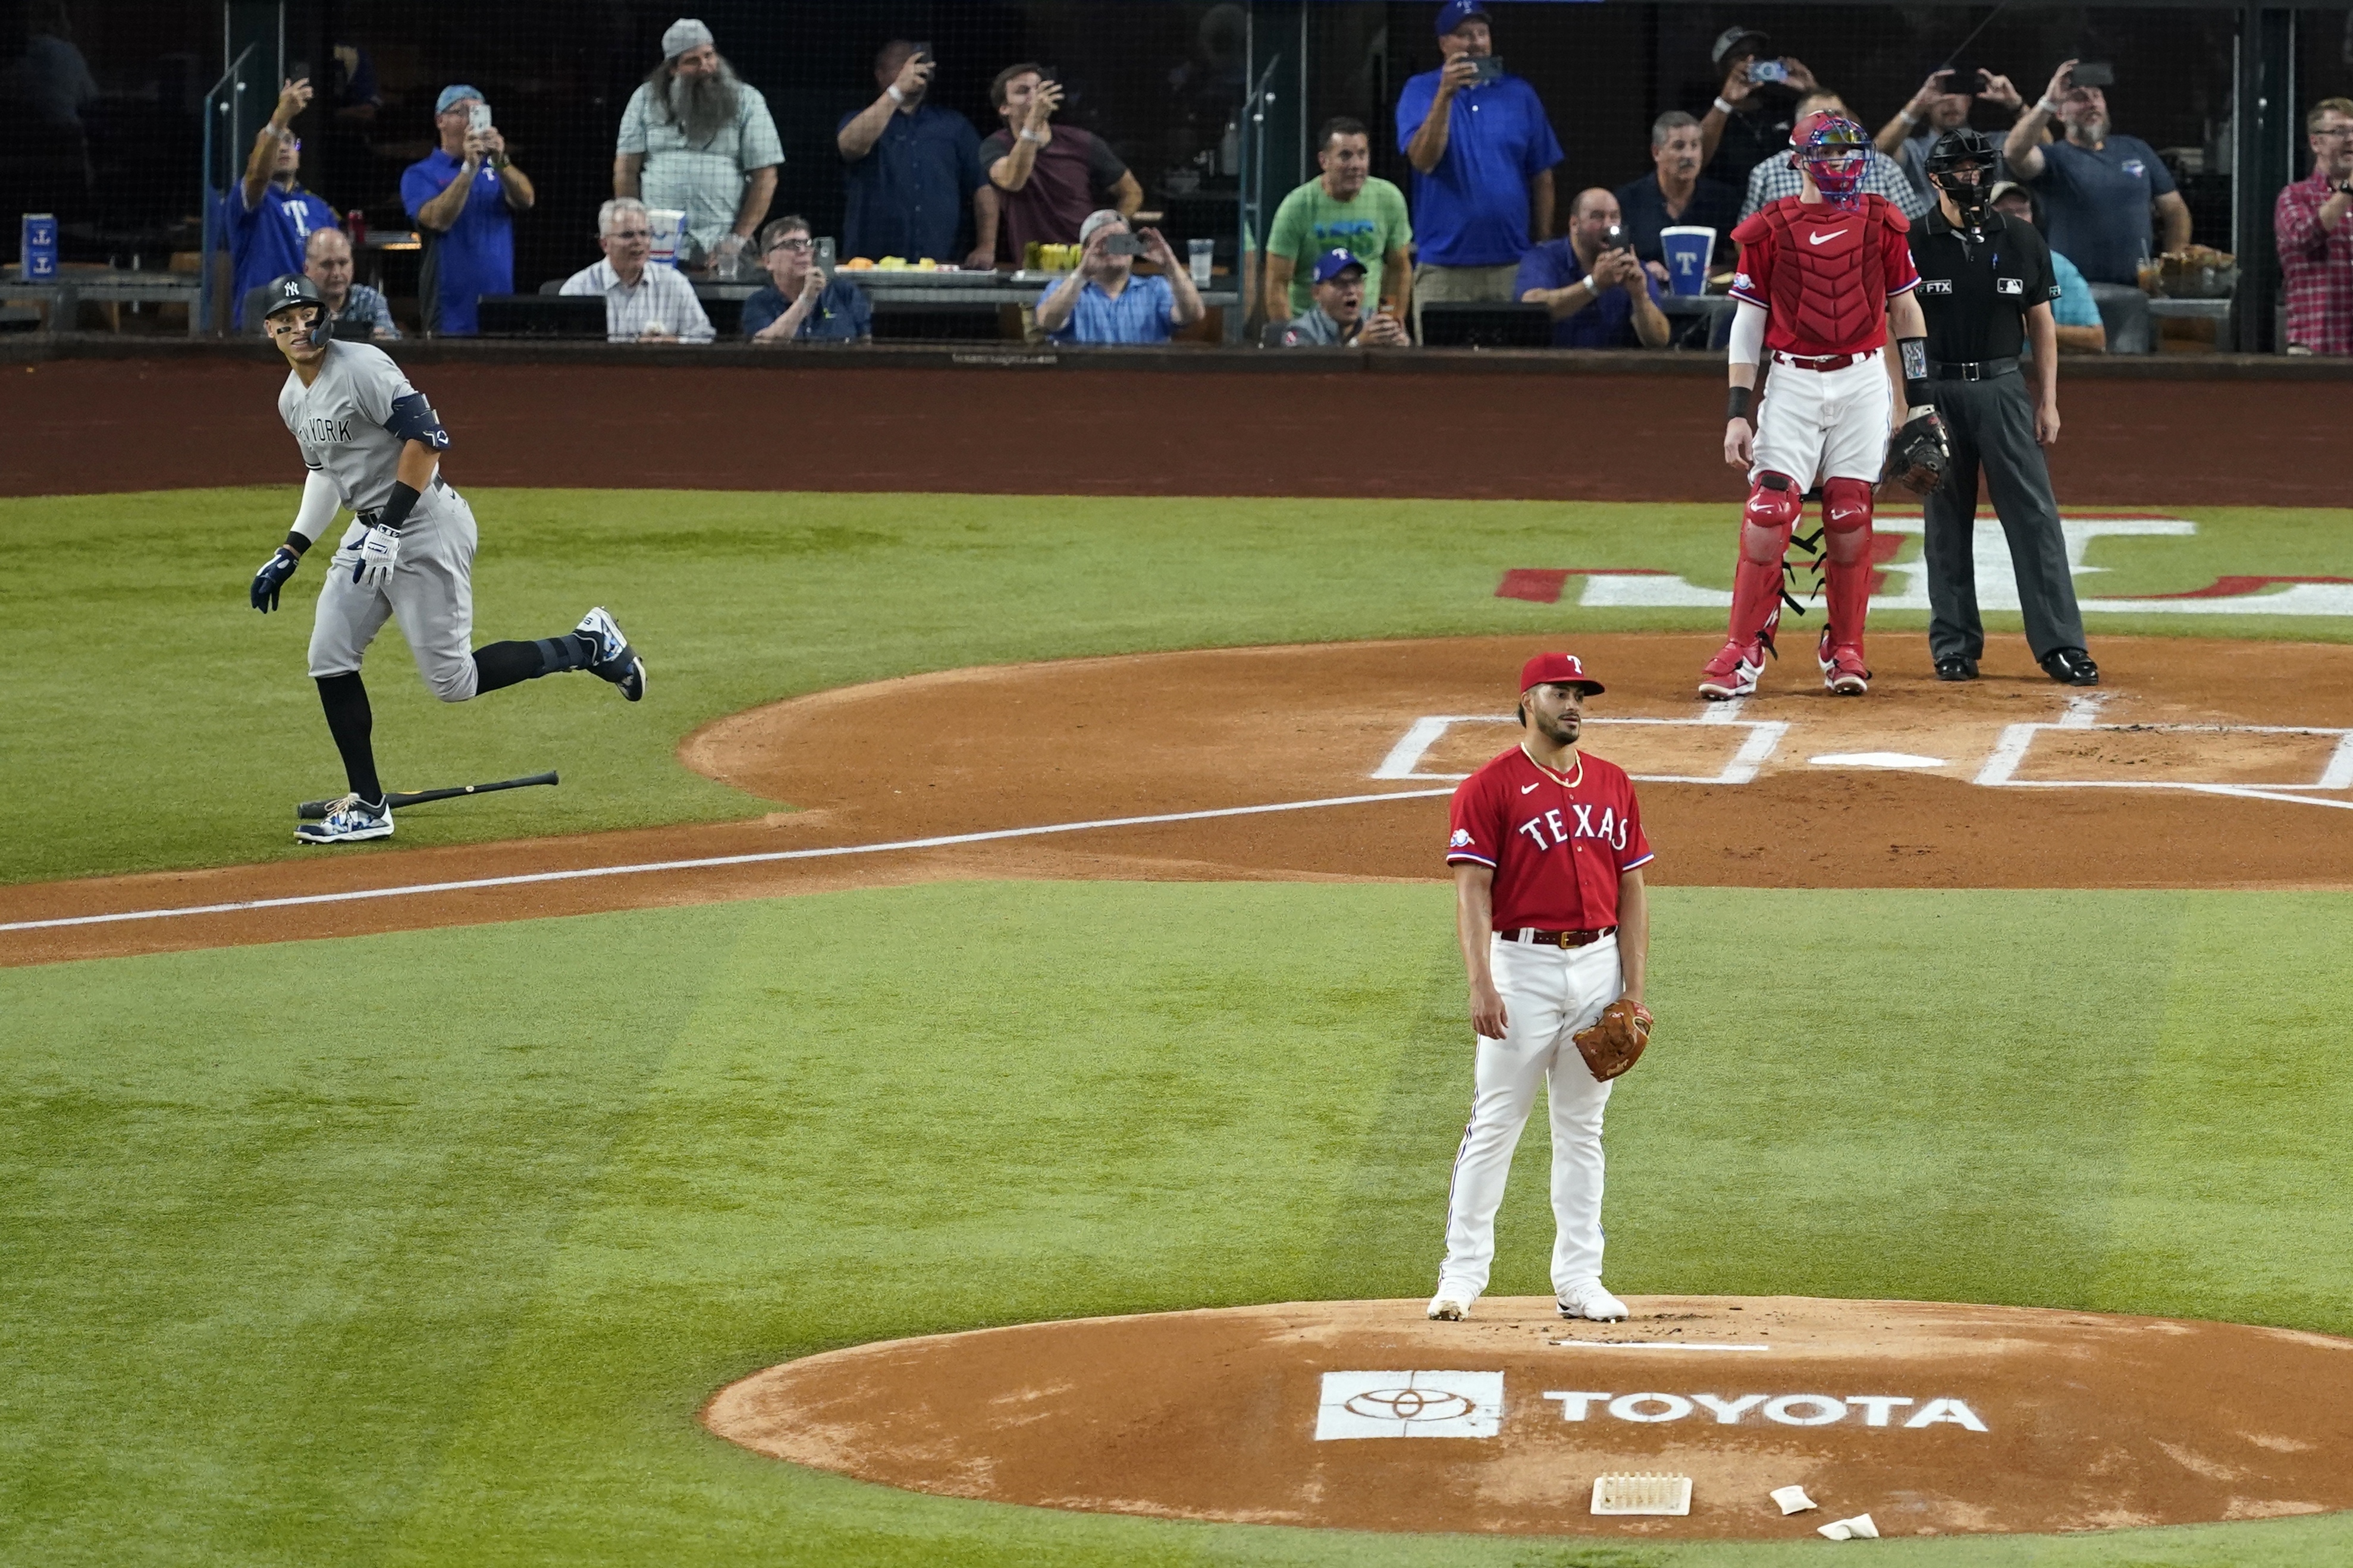 Yankees' new home run king Aaron Judge is a beloved hometown hero